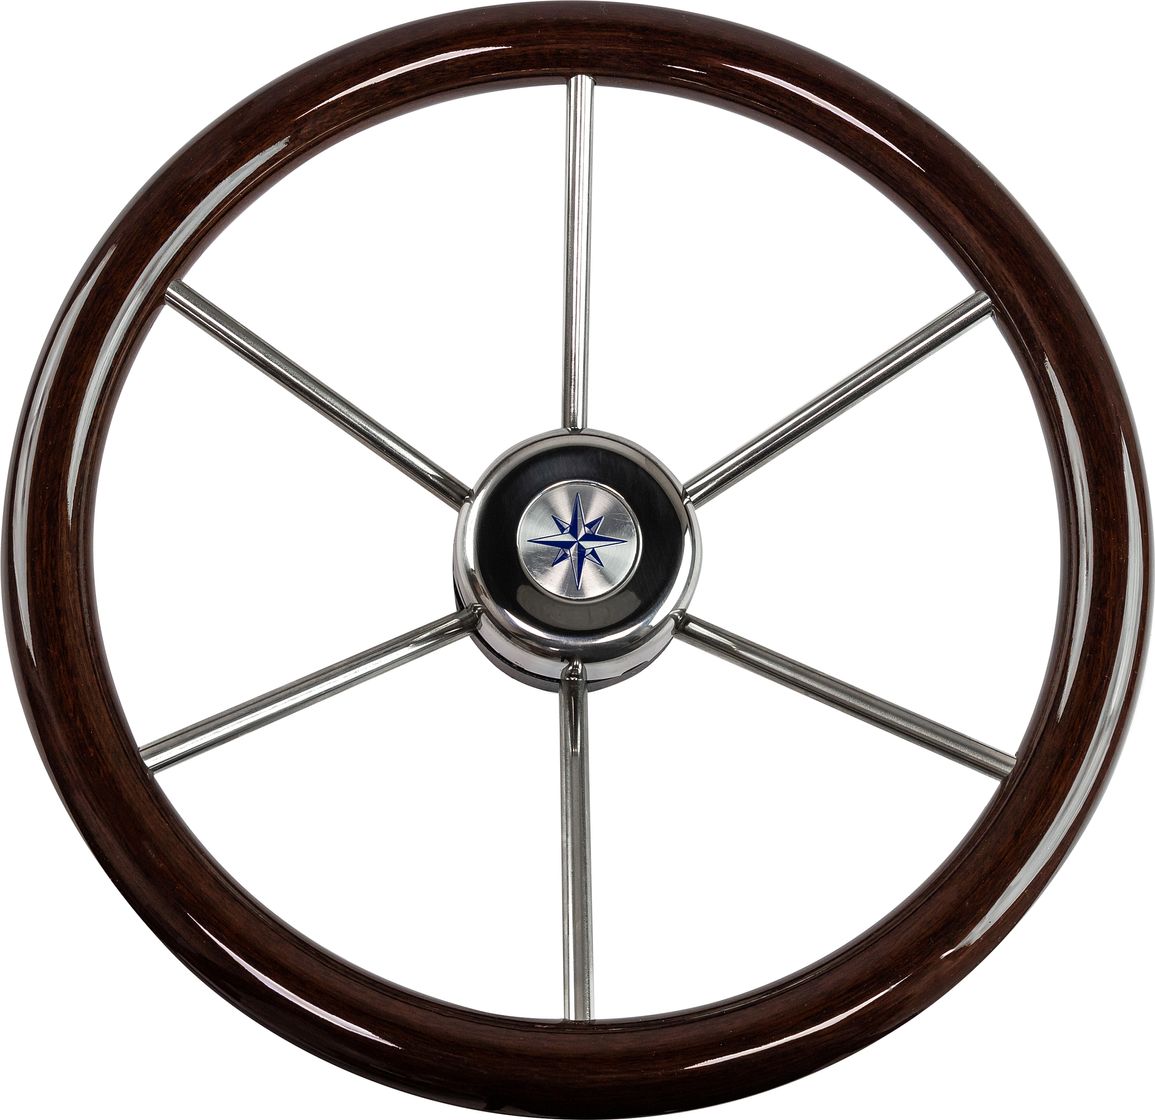 Рулевое колесо LEADER WOOD деревянный обод серебряные спицы д. 390 мм VN7390-33 рулевое колесо leader wood деревянный обод серебряные спицы д 340 мм vn7340 33